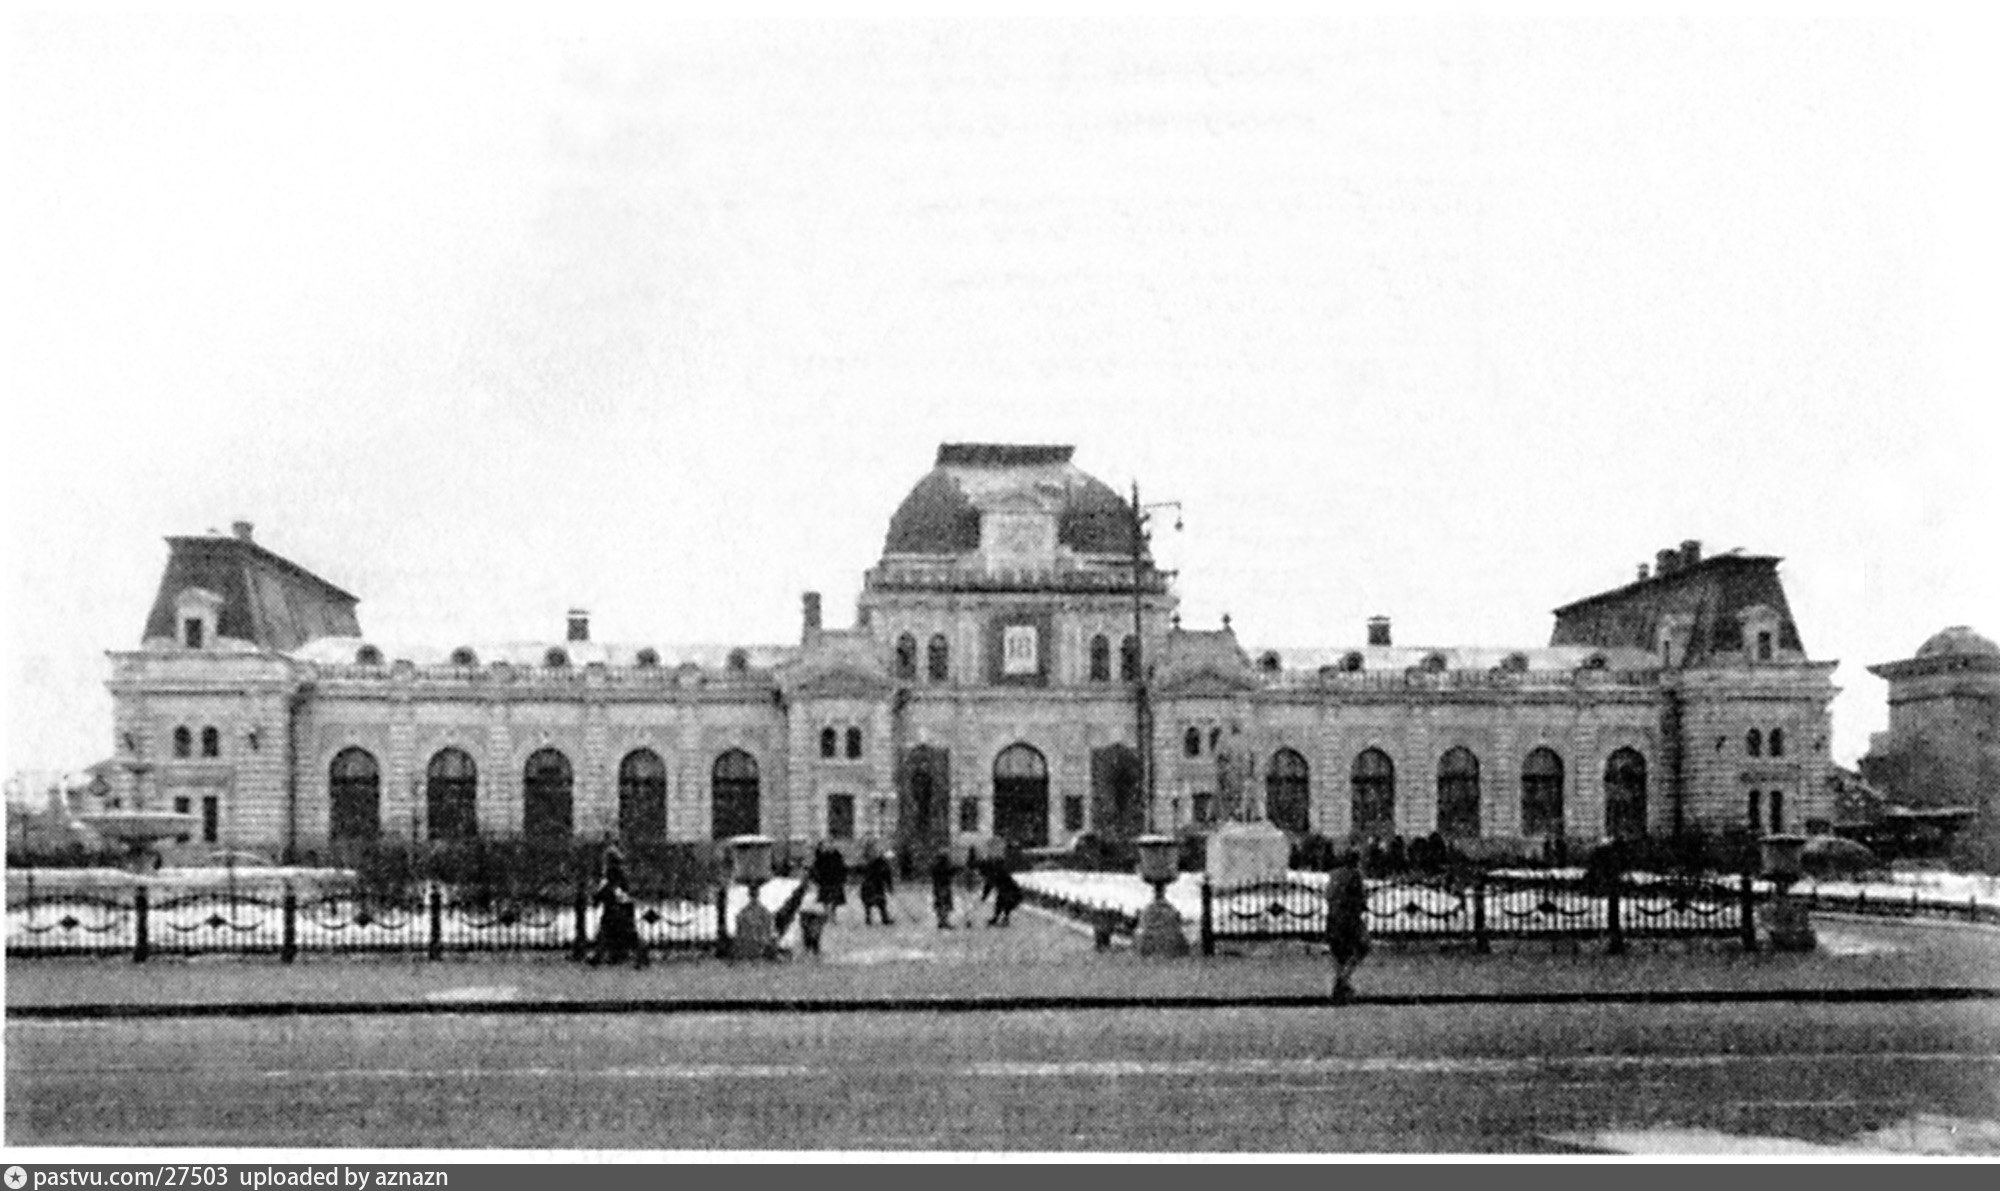 павелецкий вокзал старые